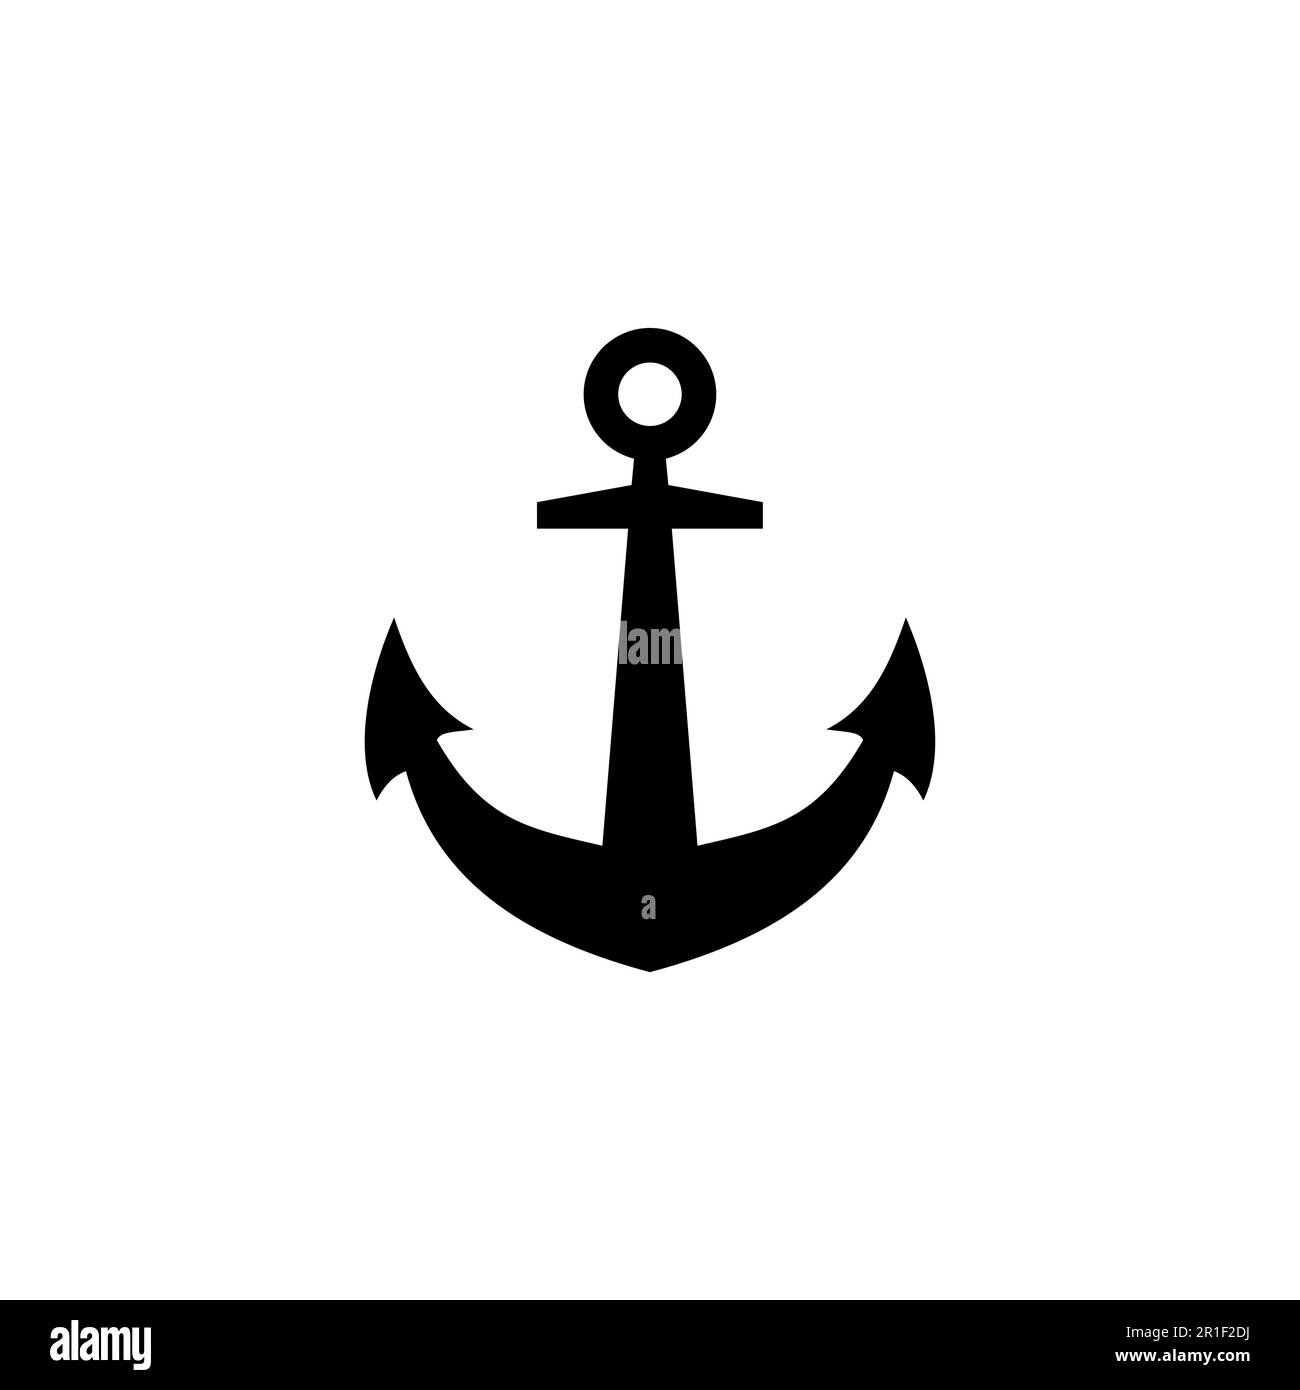 Anchor icon vector. Anchor symbol logo. Anchor marine icon Stock Vector ...